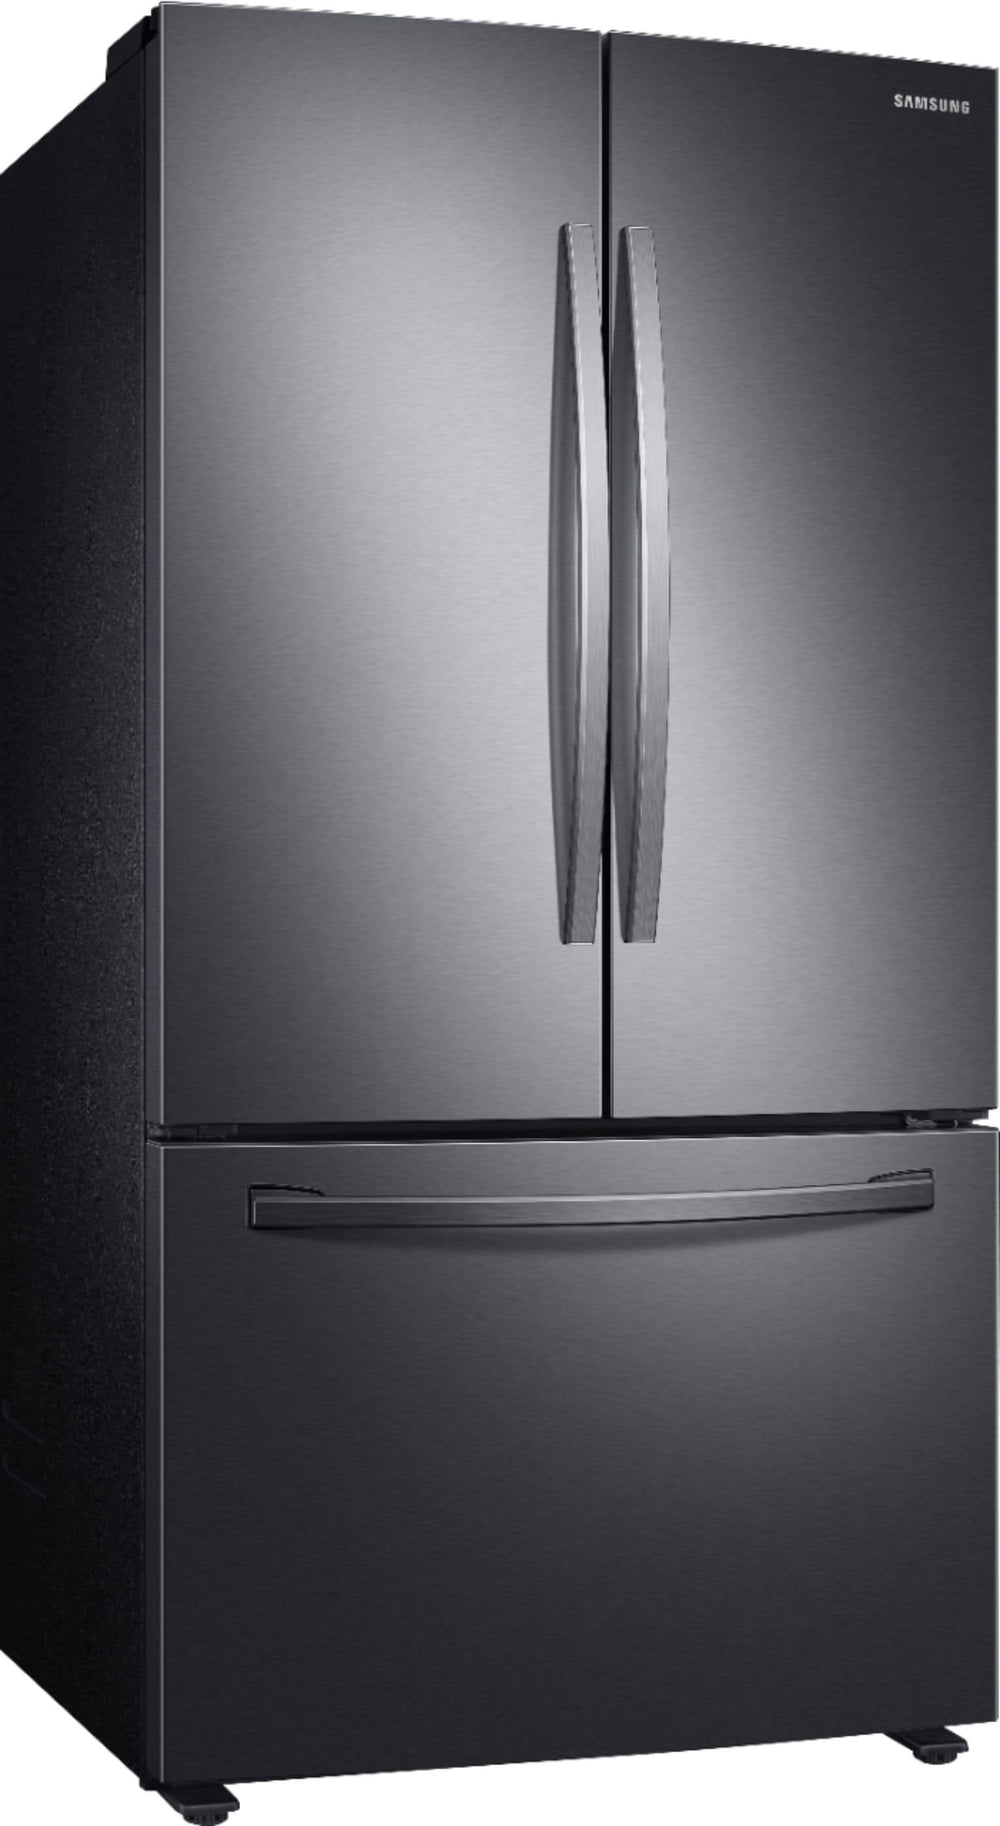 Samsung - 28 cu. ft. Large Capacity 3-Door French Door Refrigerator - Black stainless steel_1